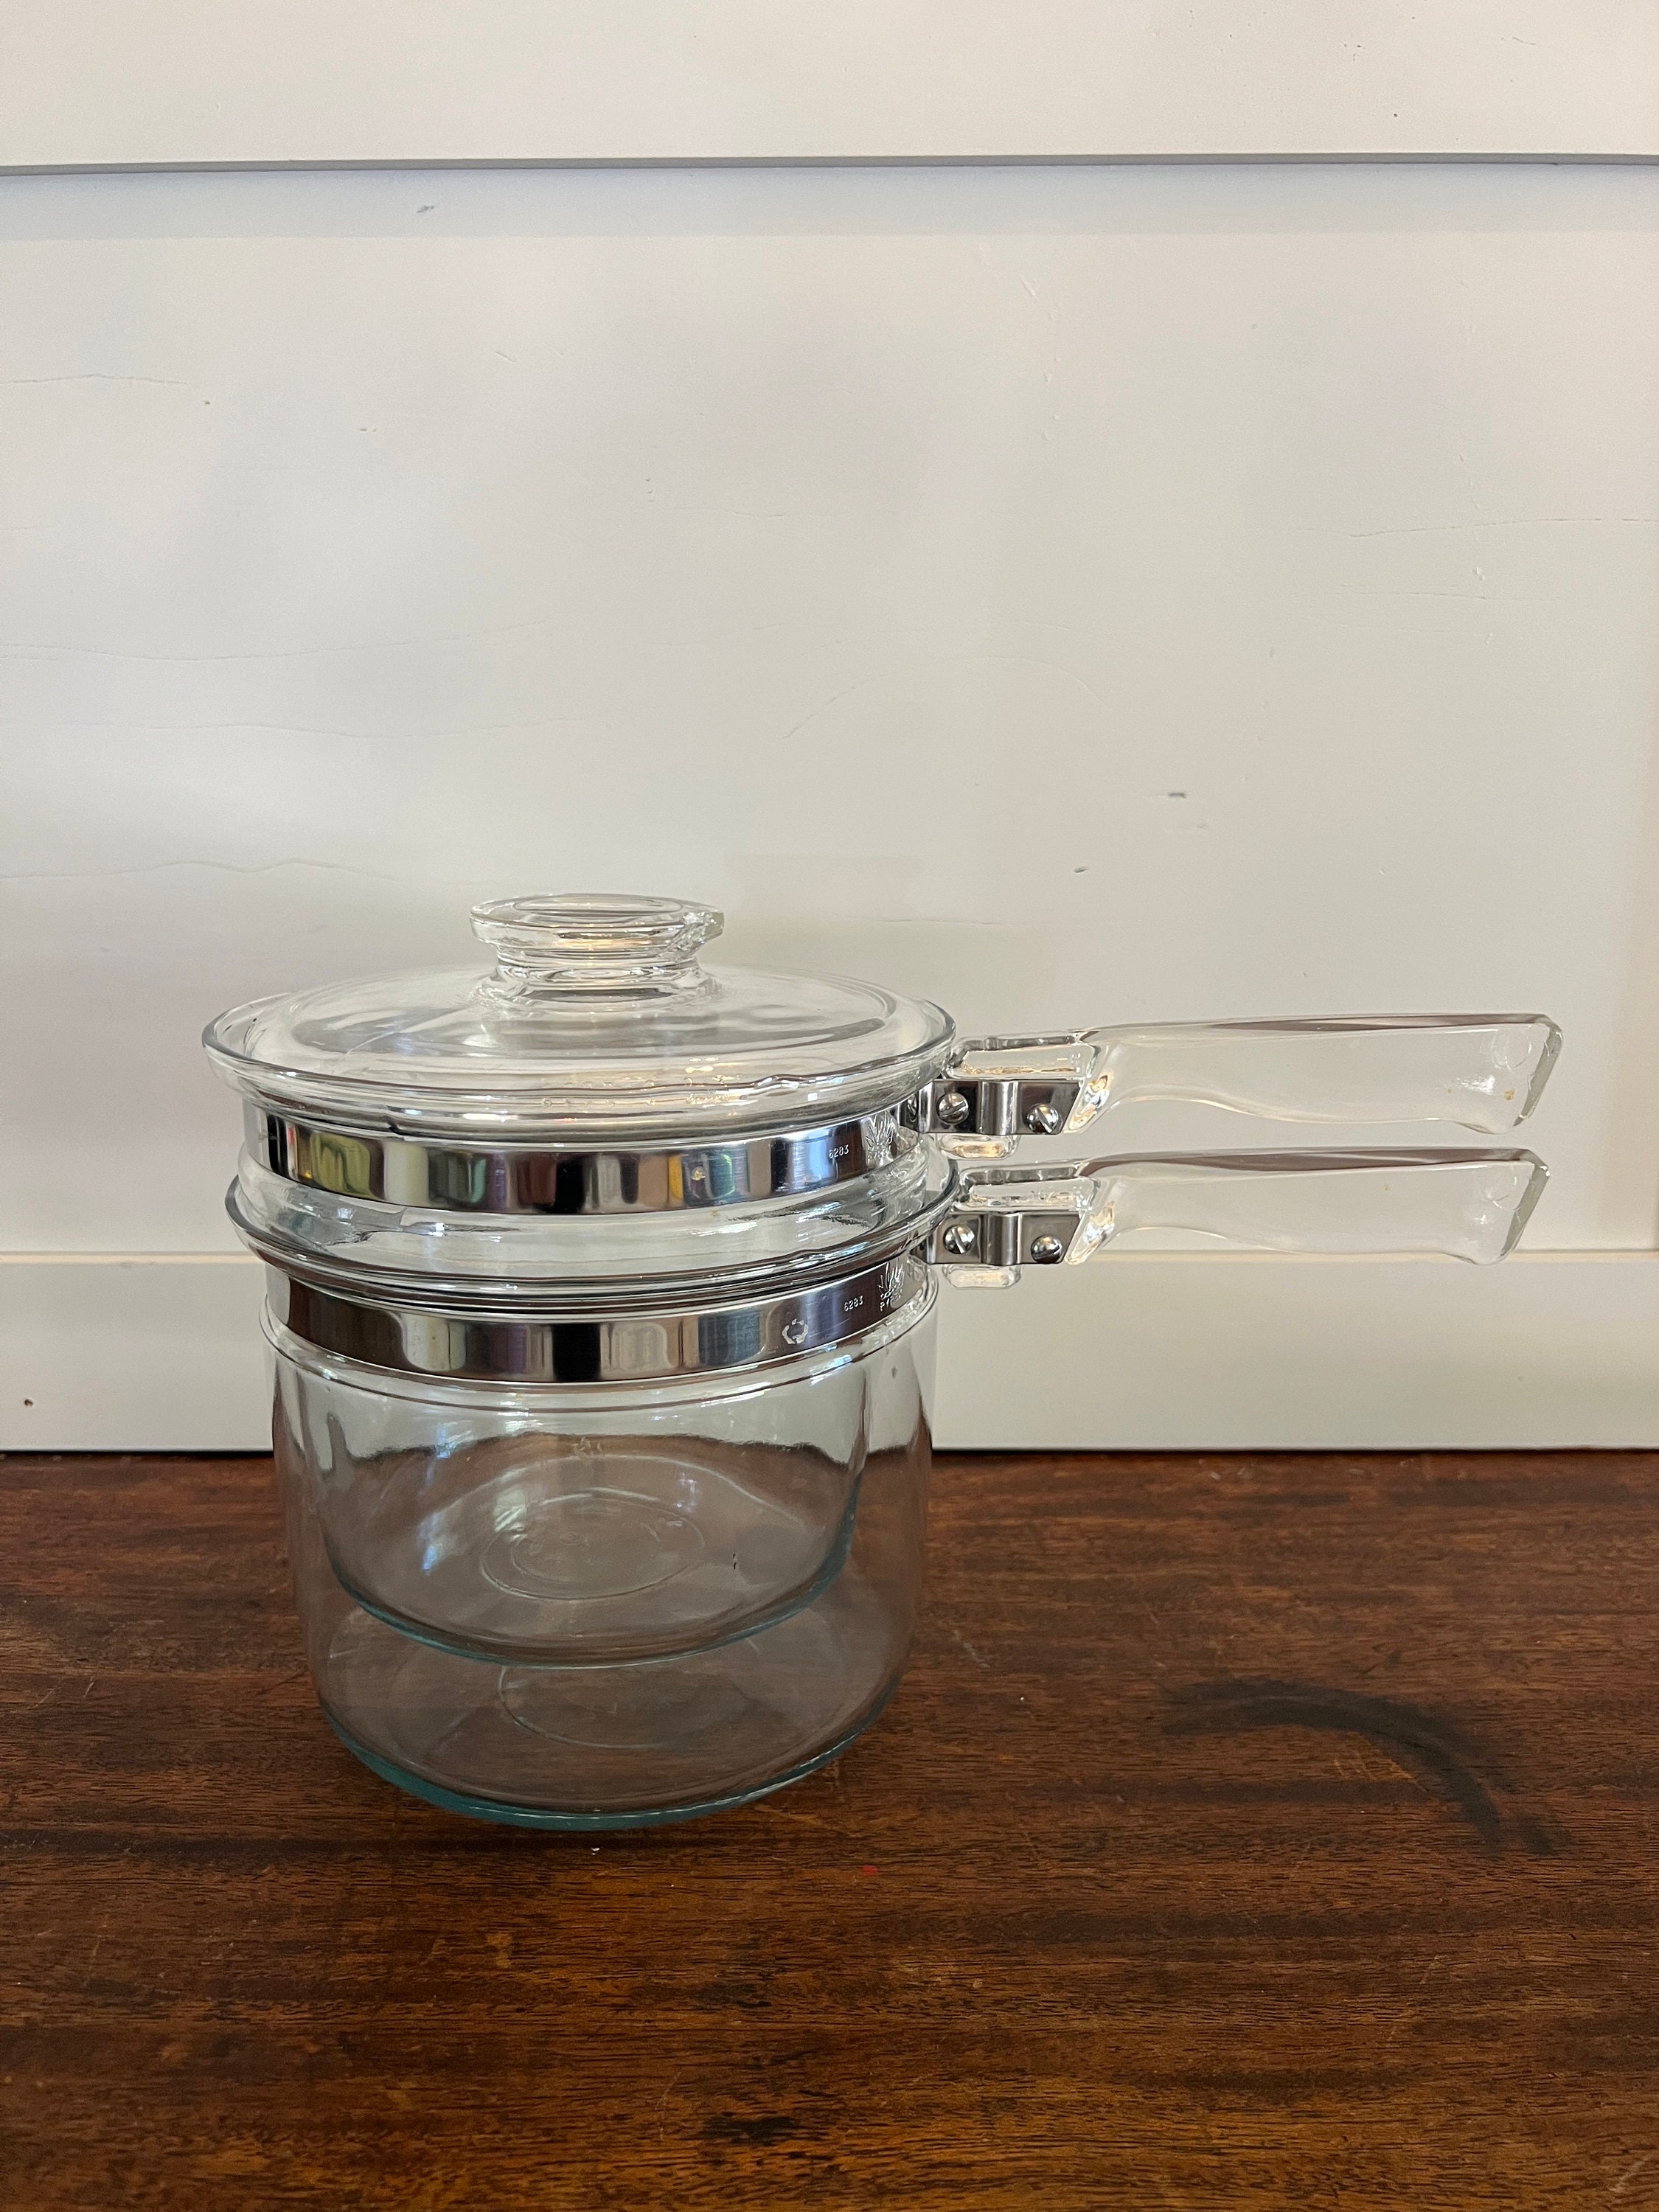 Vintage Pyrex 1-1/2 Quart 6283 Glass Double Boiler (No Lid)